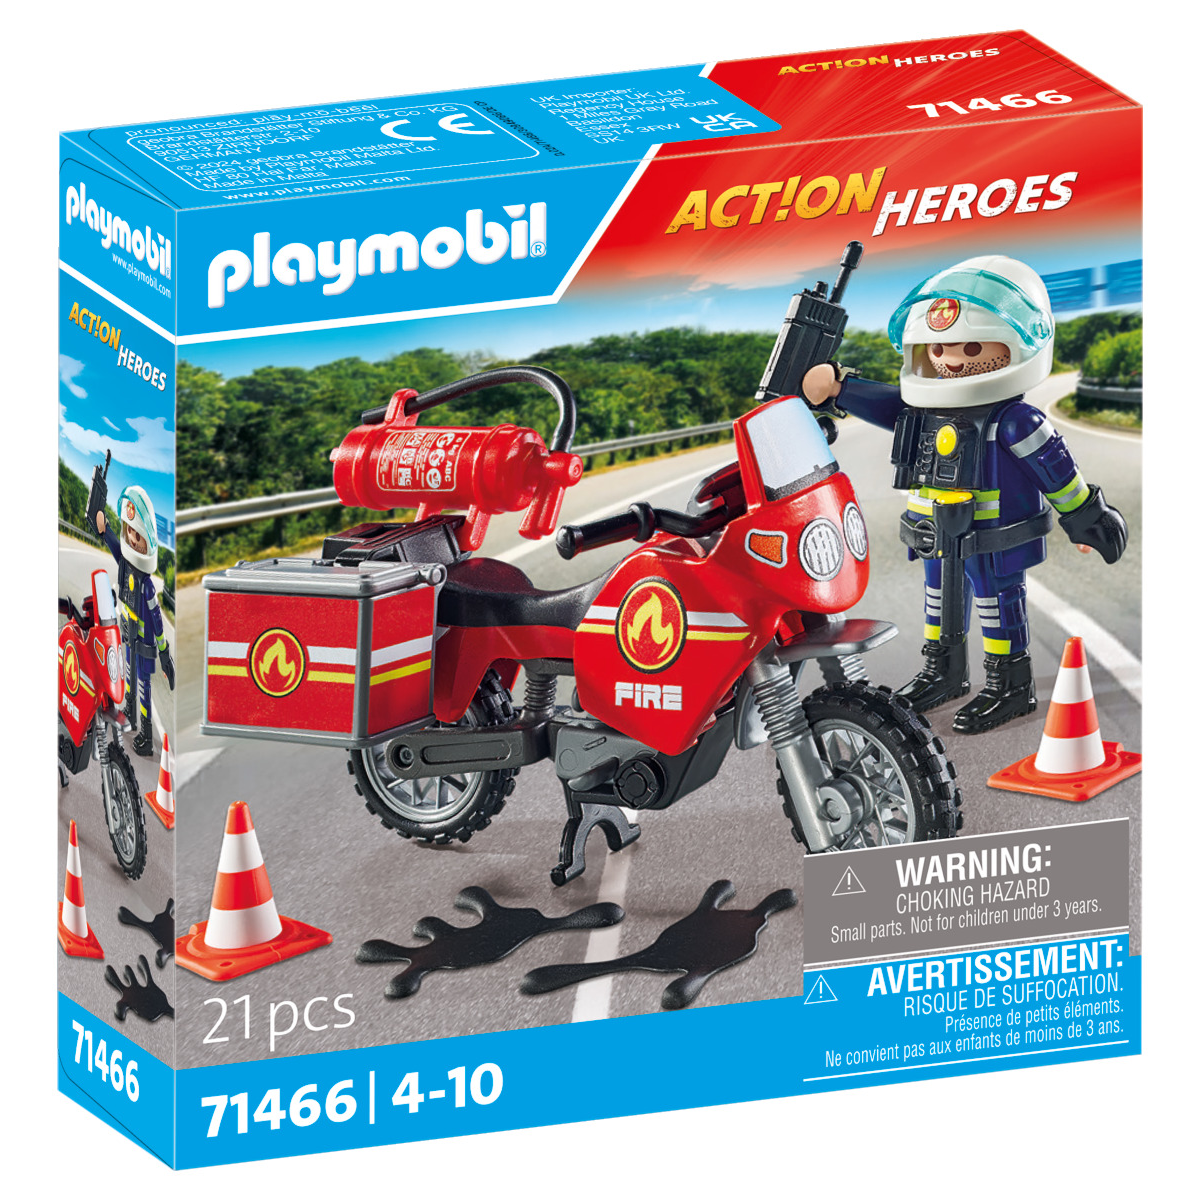 Neue Feuerwehr-Action mit Playmobil